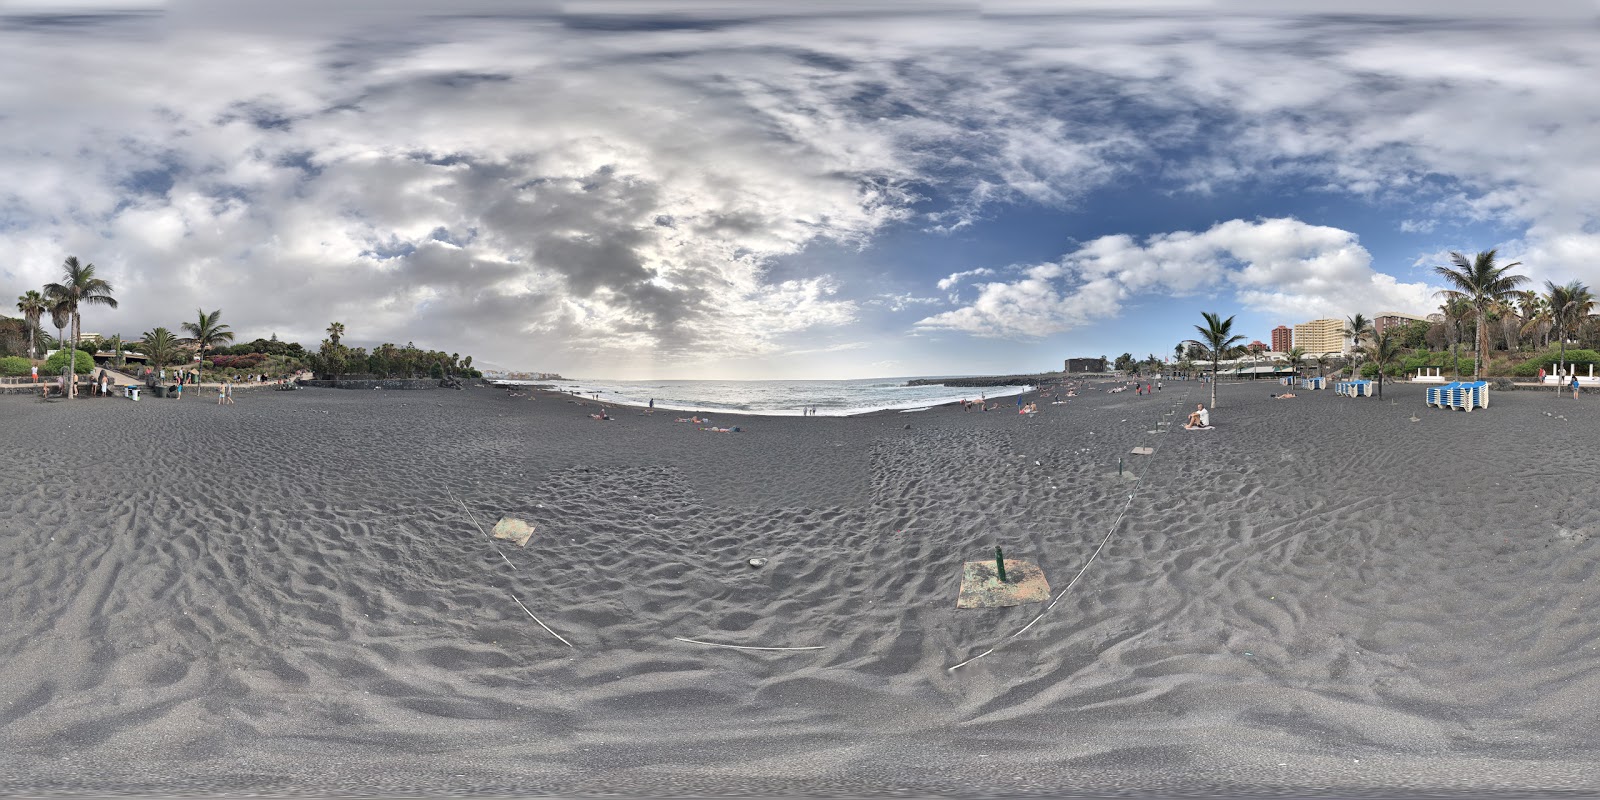 Foto de Playa del Castillo (Playa Jardin) - lugar popular entre los conocedores del relax